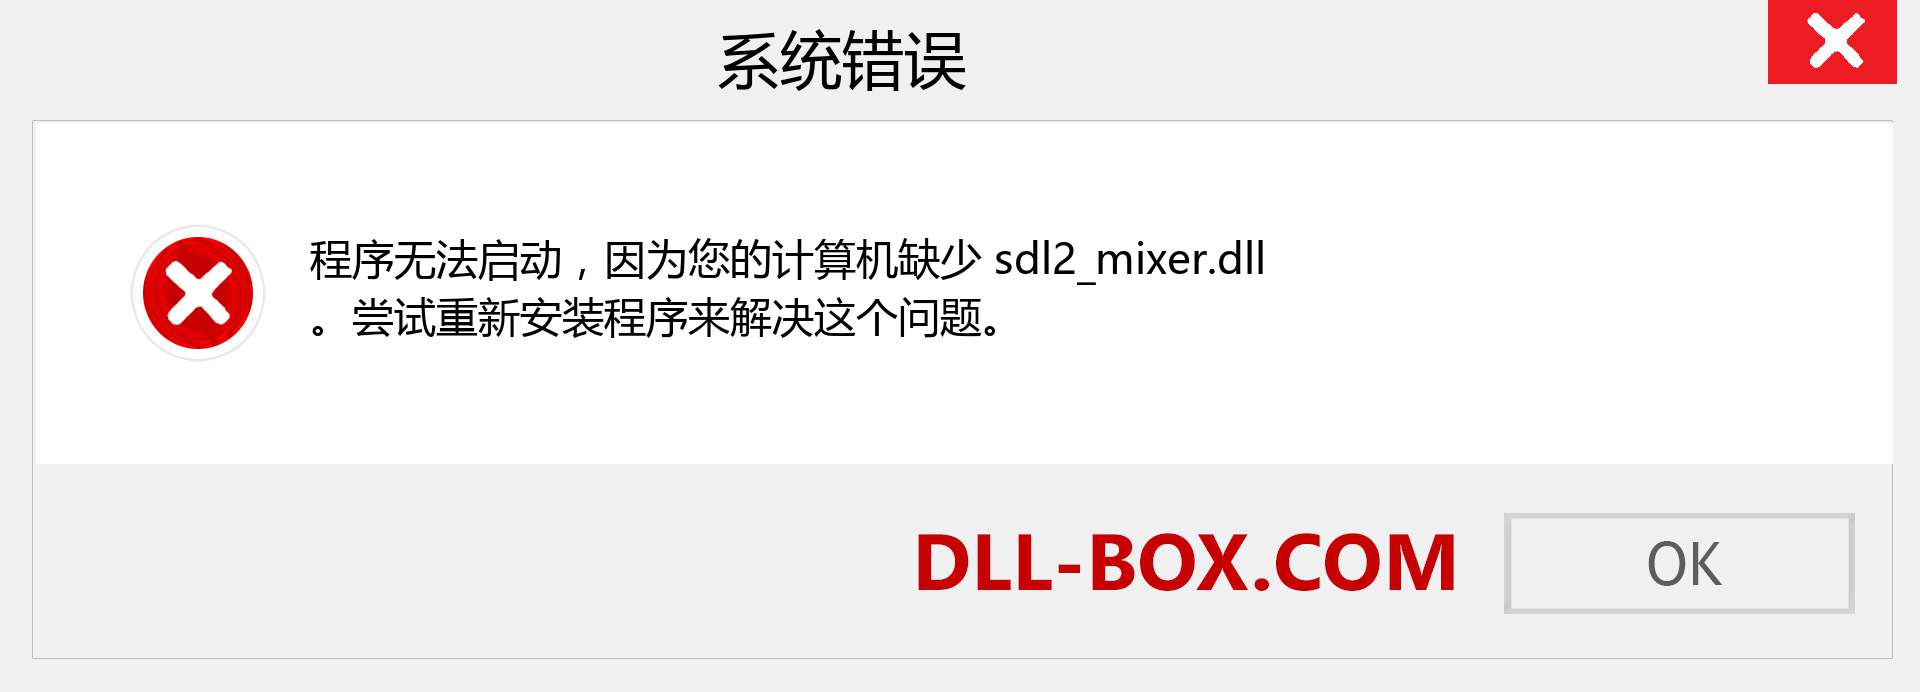 sdl2_mixer.dll 文件丢失？。 适用于 Windows 7、8、10 的下载 - 修复 Windows、照片、图像上的 sdl2_mixer dll 丢失错误